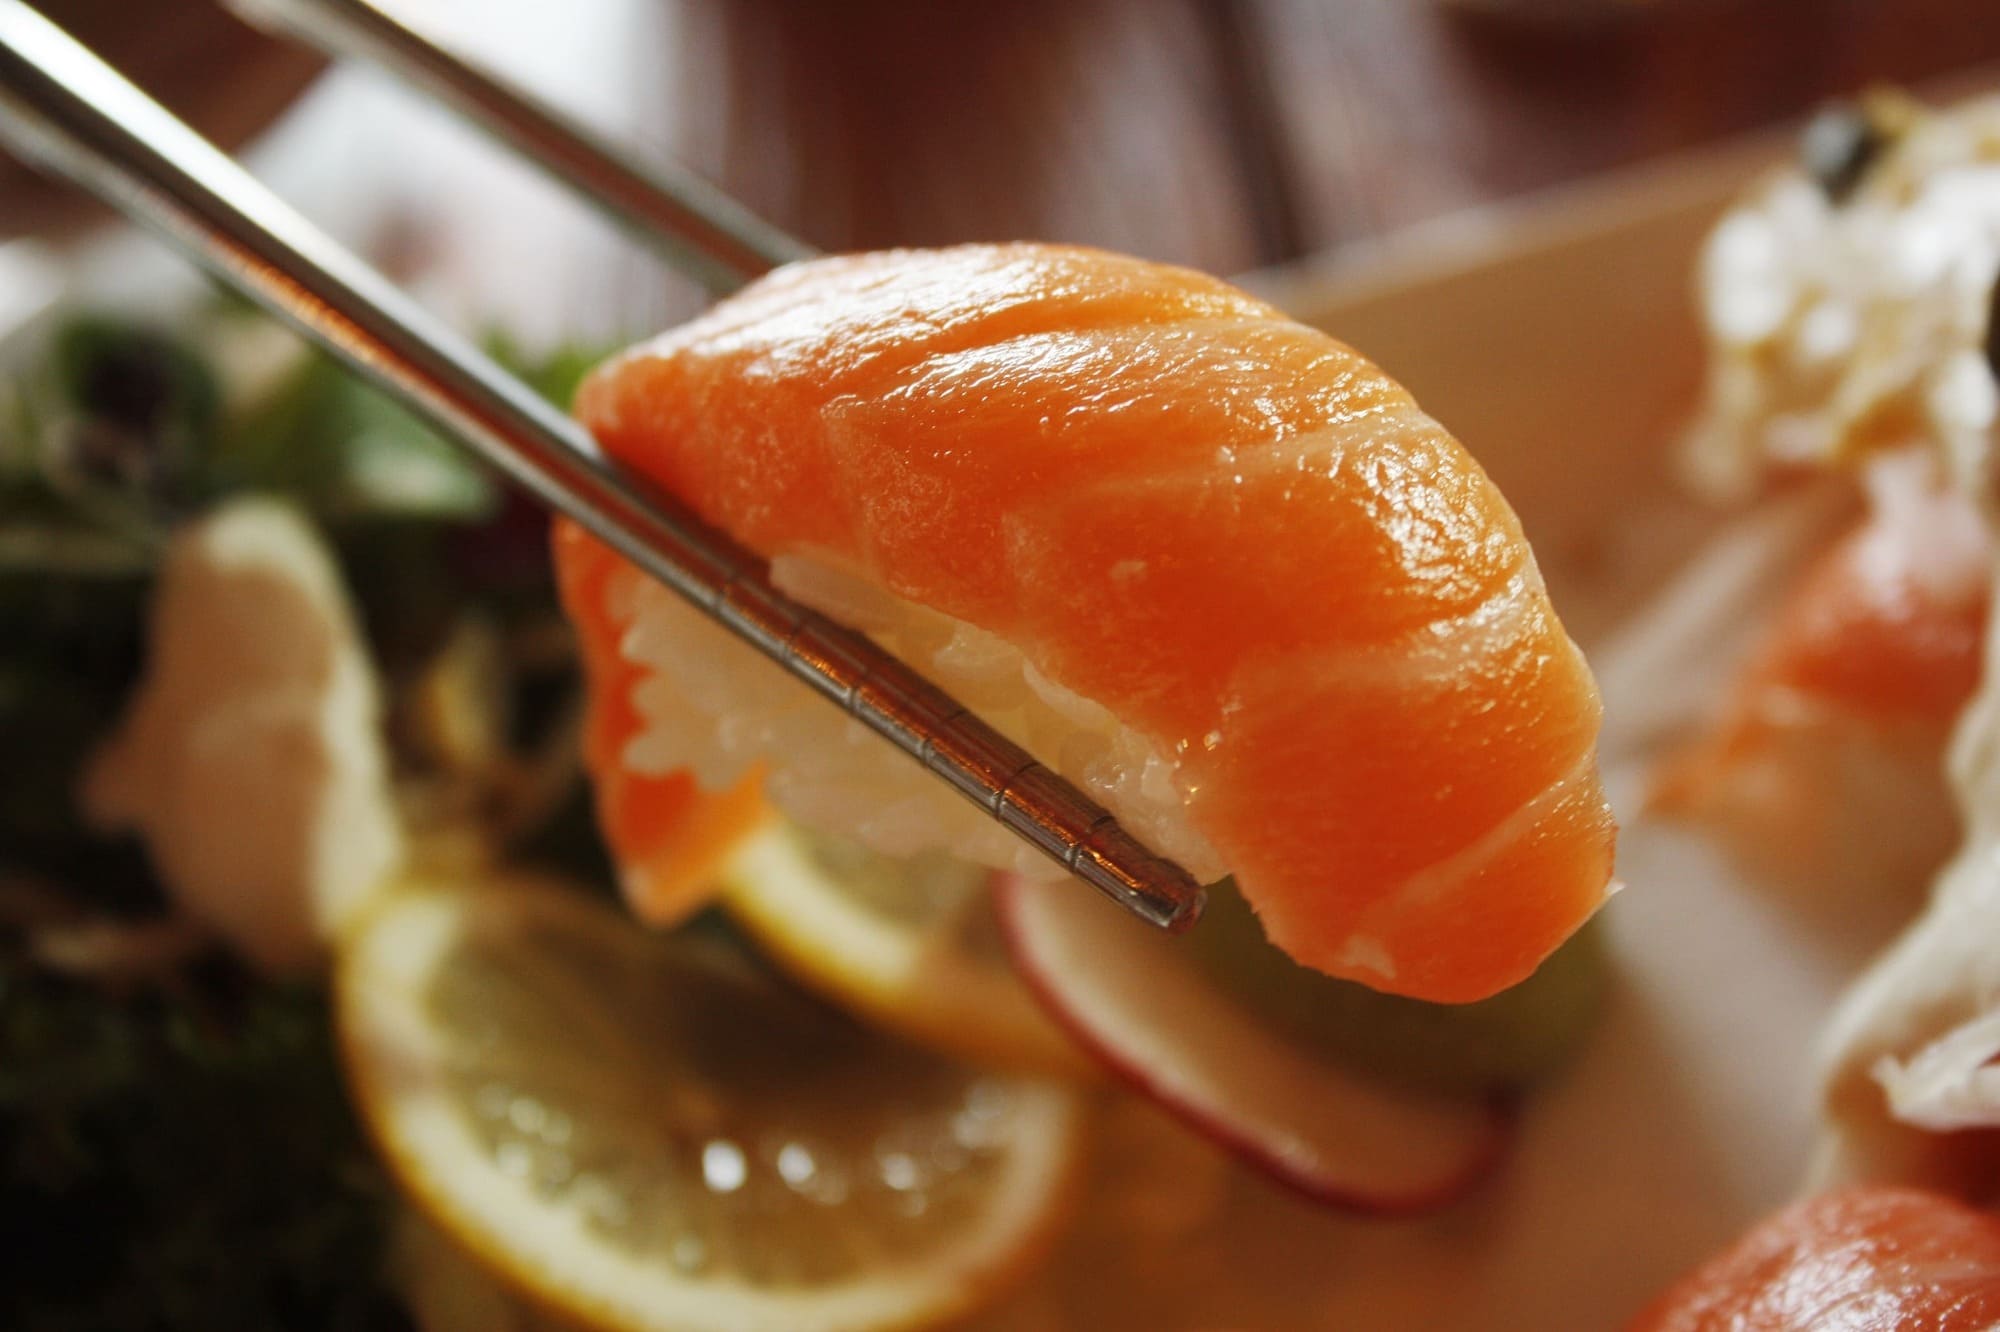 Imagen de sushi fresco y apetitoso, con una presentación impecable que resalta la calidad de los ingredientes y la pasión por la cocina japonesa